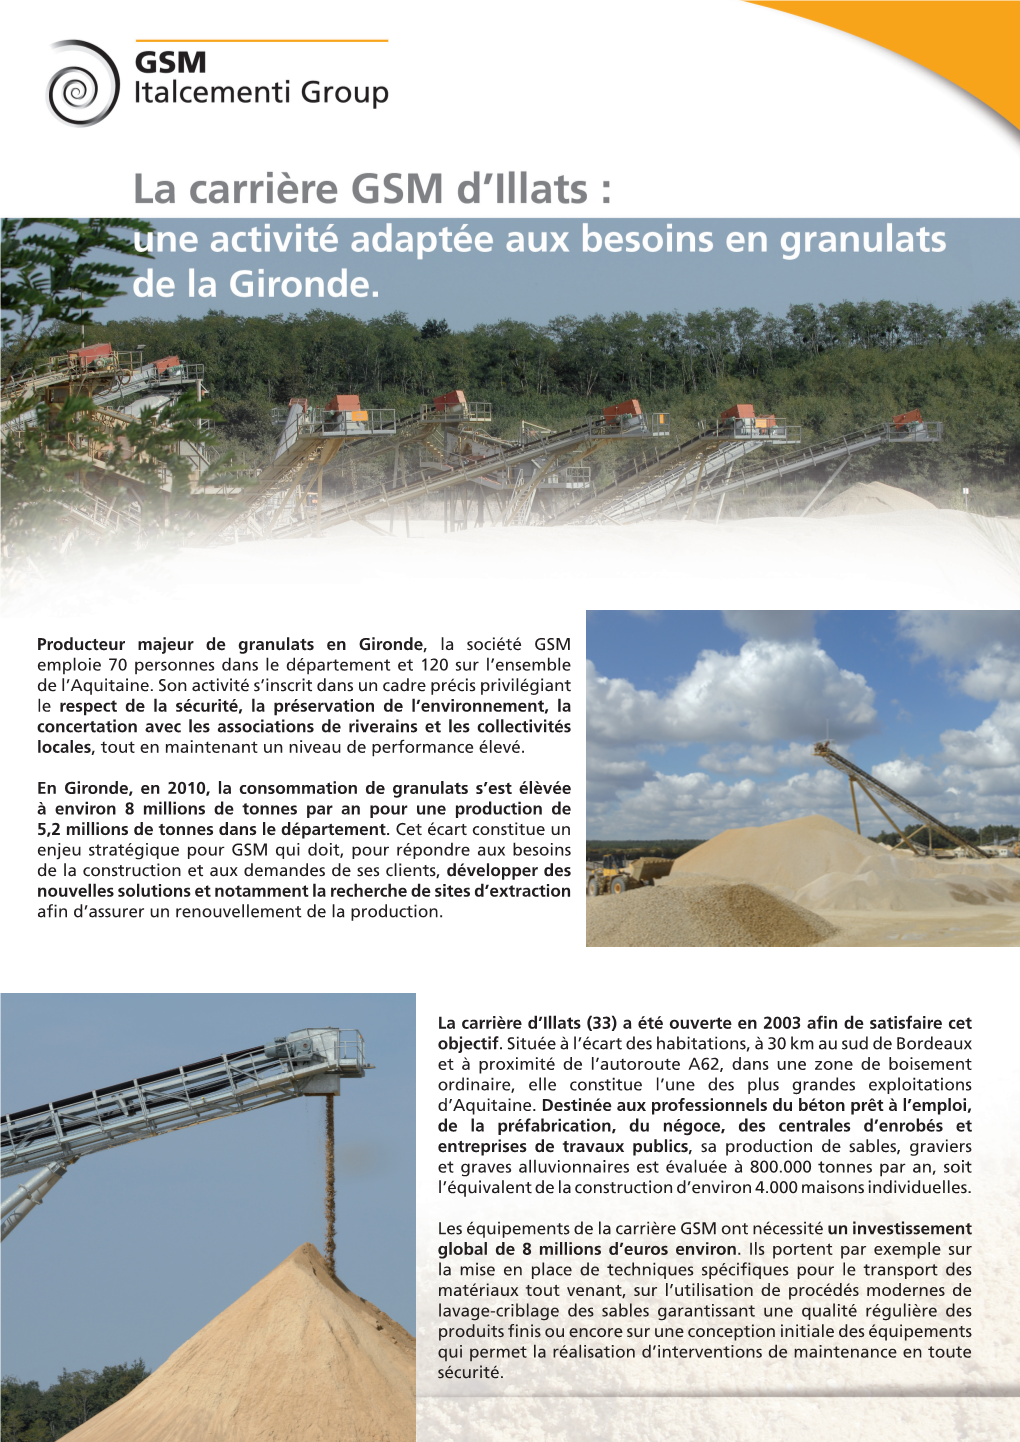 Producteur Majeur De Granulats En Gironde, La Société GSM Emploie 70 Personnes Dans Le Département Et 120 Sur L’Ensemble De L’Aquitaine